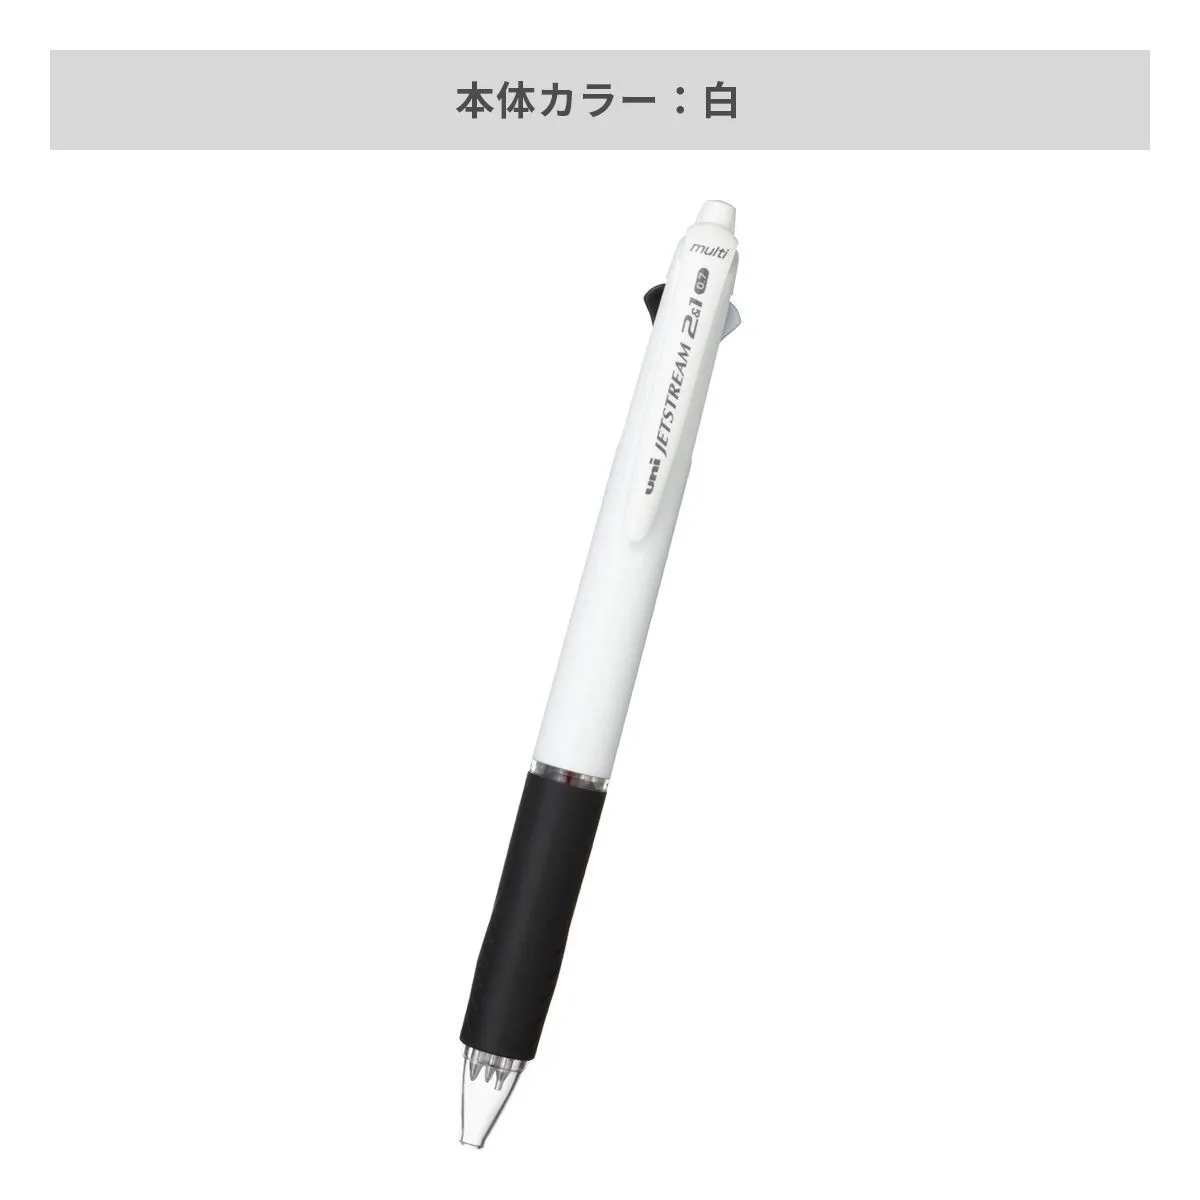 三菱鉛筆 ジェットストリーム 2&1多機能ペン 白軸 0.7mm【多機能ペン / パッド印刷】 画像4